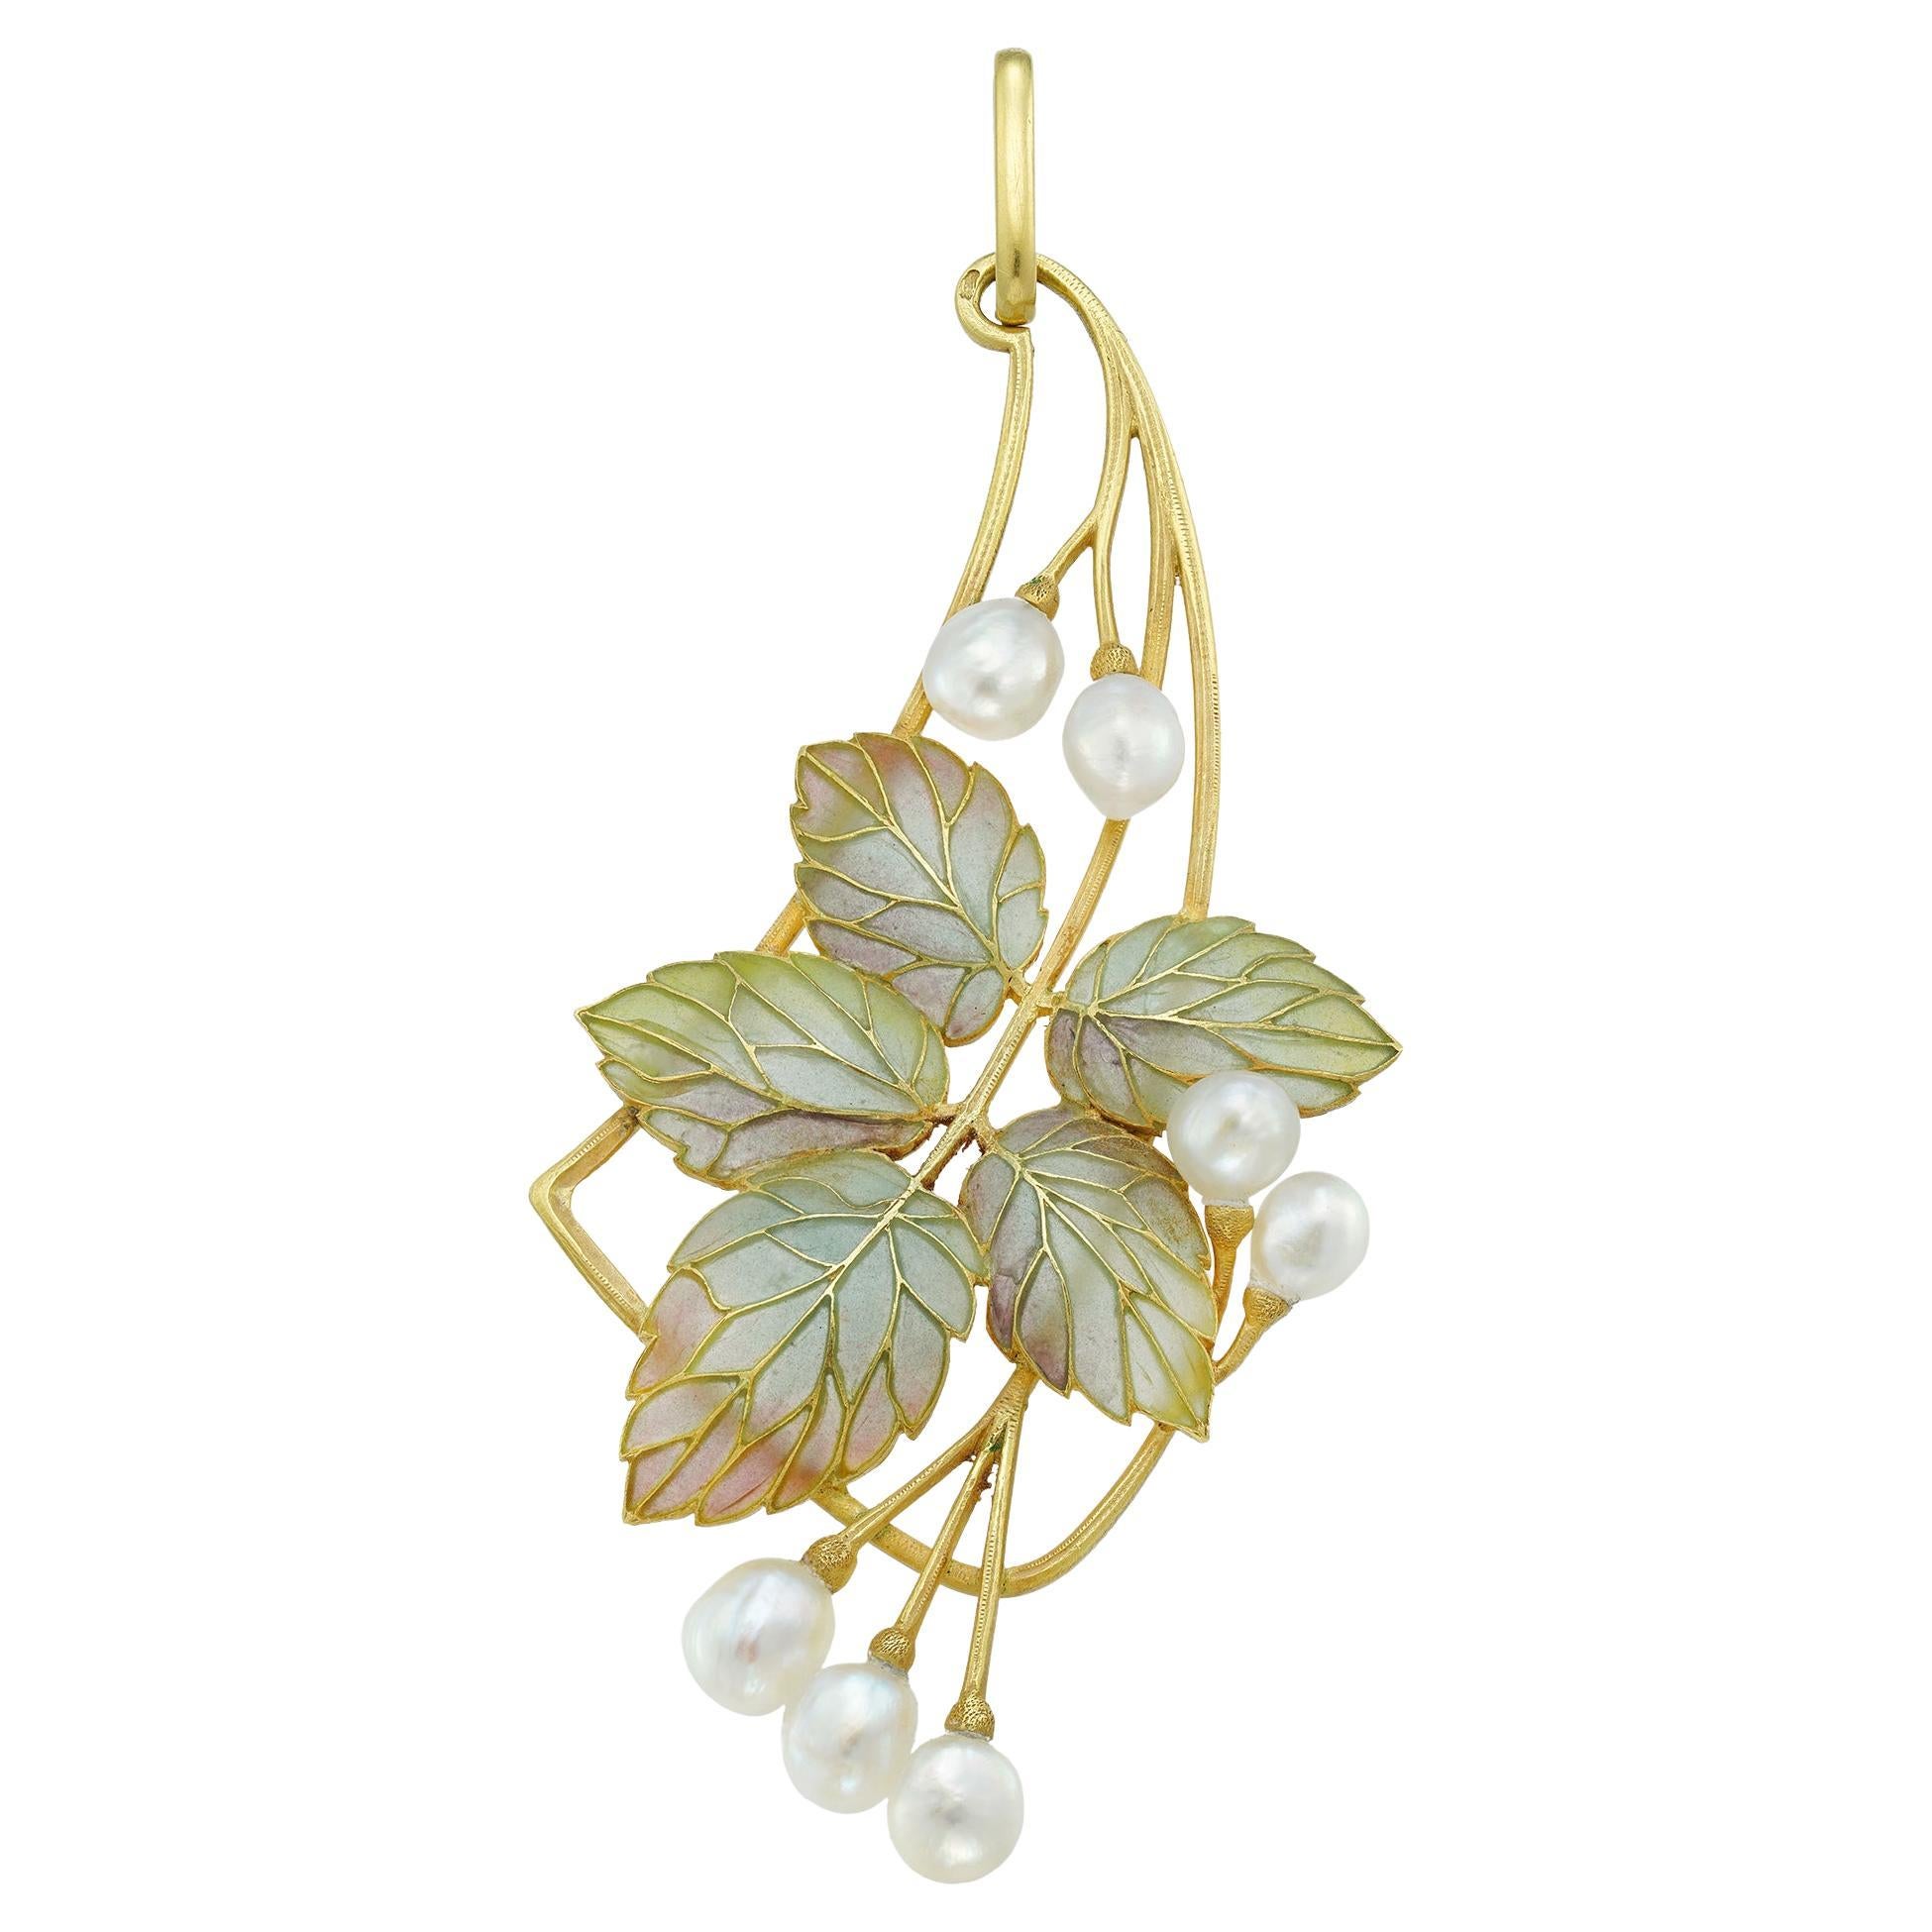 An Art Nouveau Enamel And Pearl Pendant By Falize